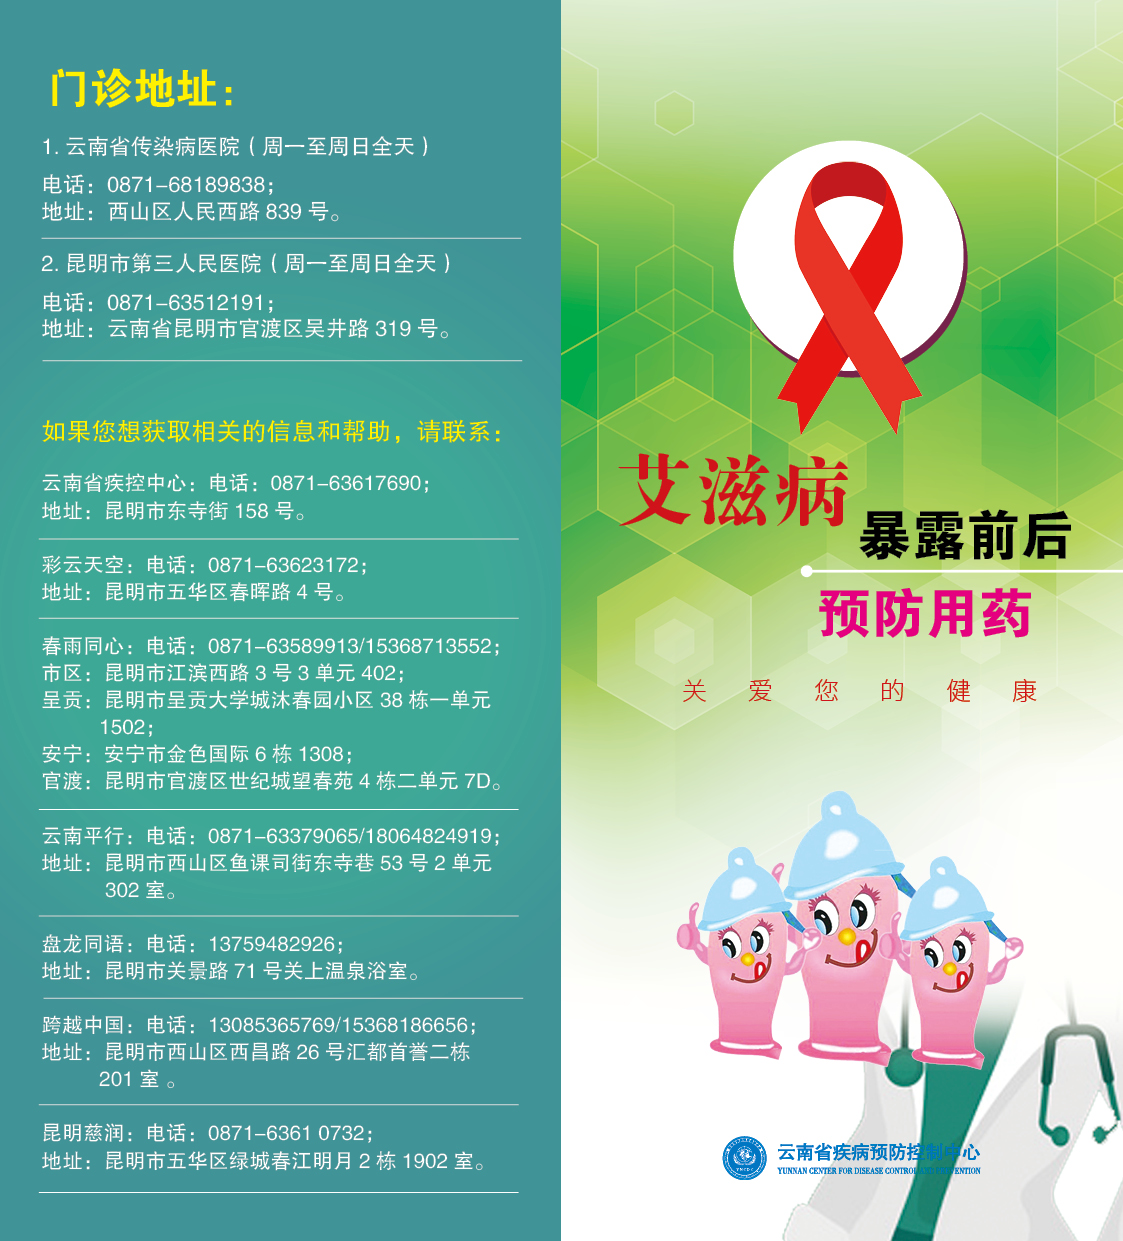 云南省艾滋病暴露前后预防服药宣传折页-1.jpg